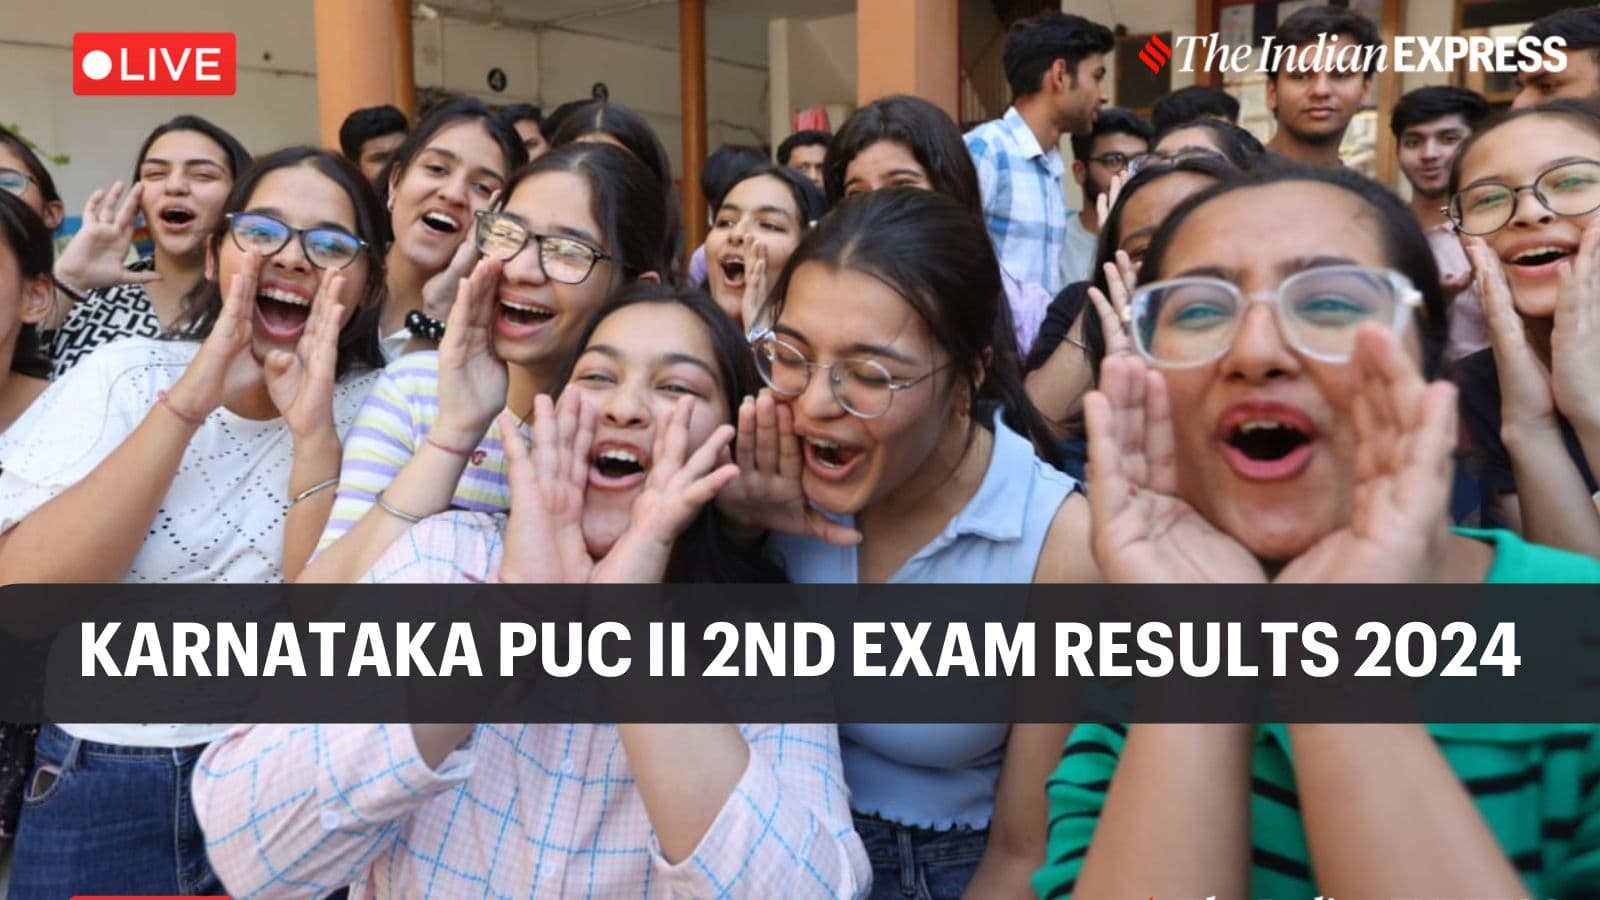 Karnataka 2nd PUC Supplementary Result 2024 Live: Karnataka 2nd PUC exam 2 results 2024 today at 3 pm